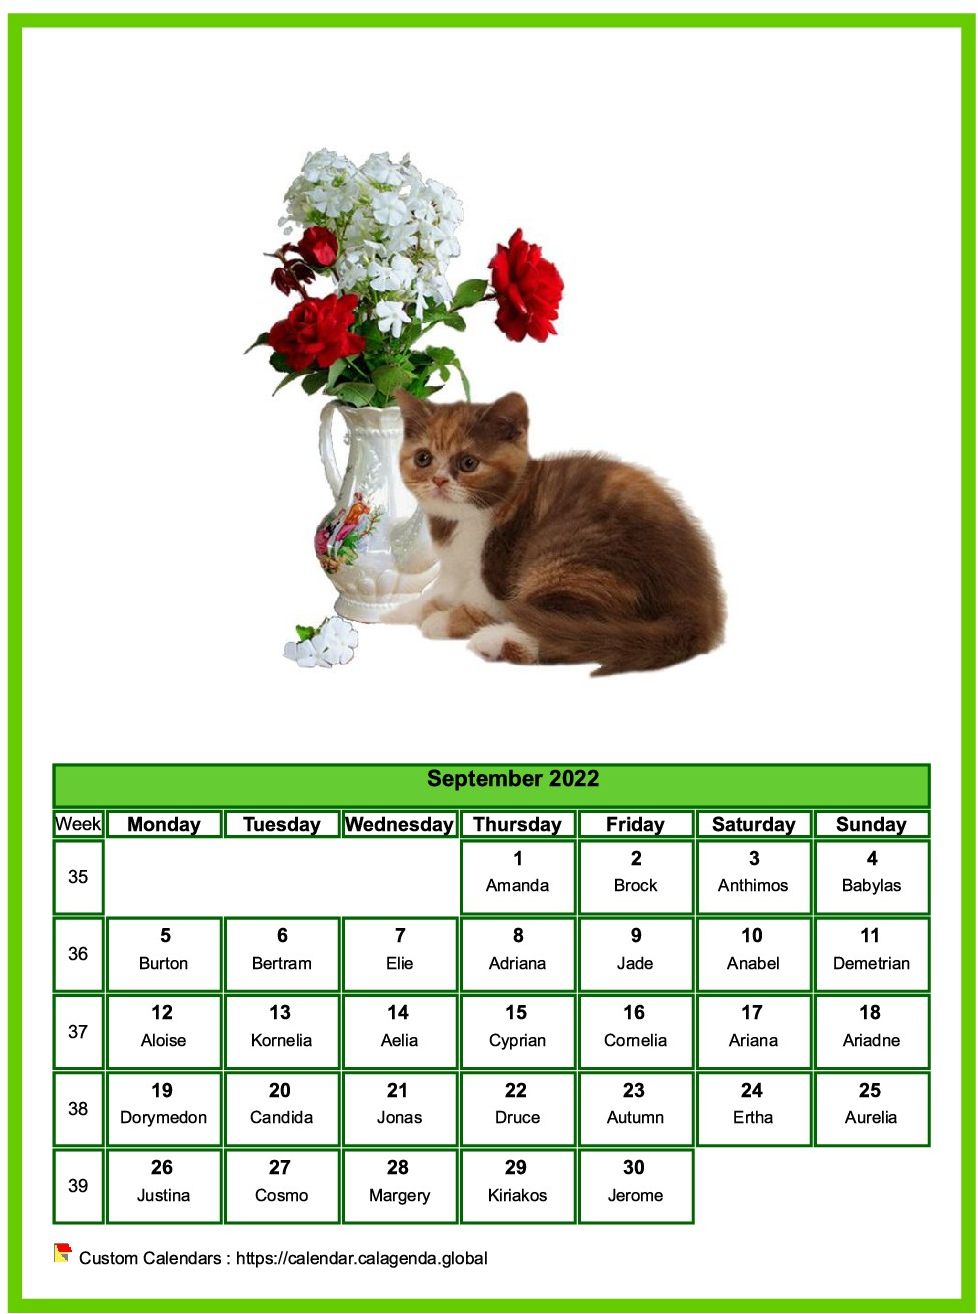 Calendar September 2022 cats